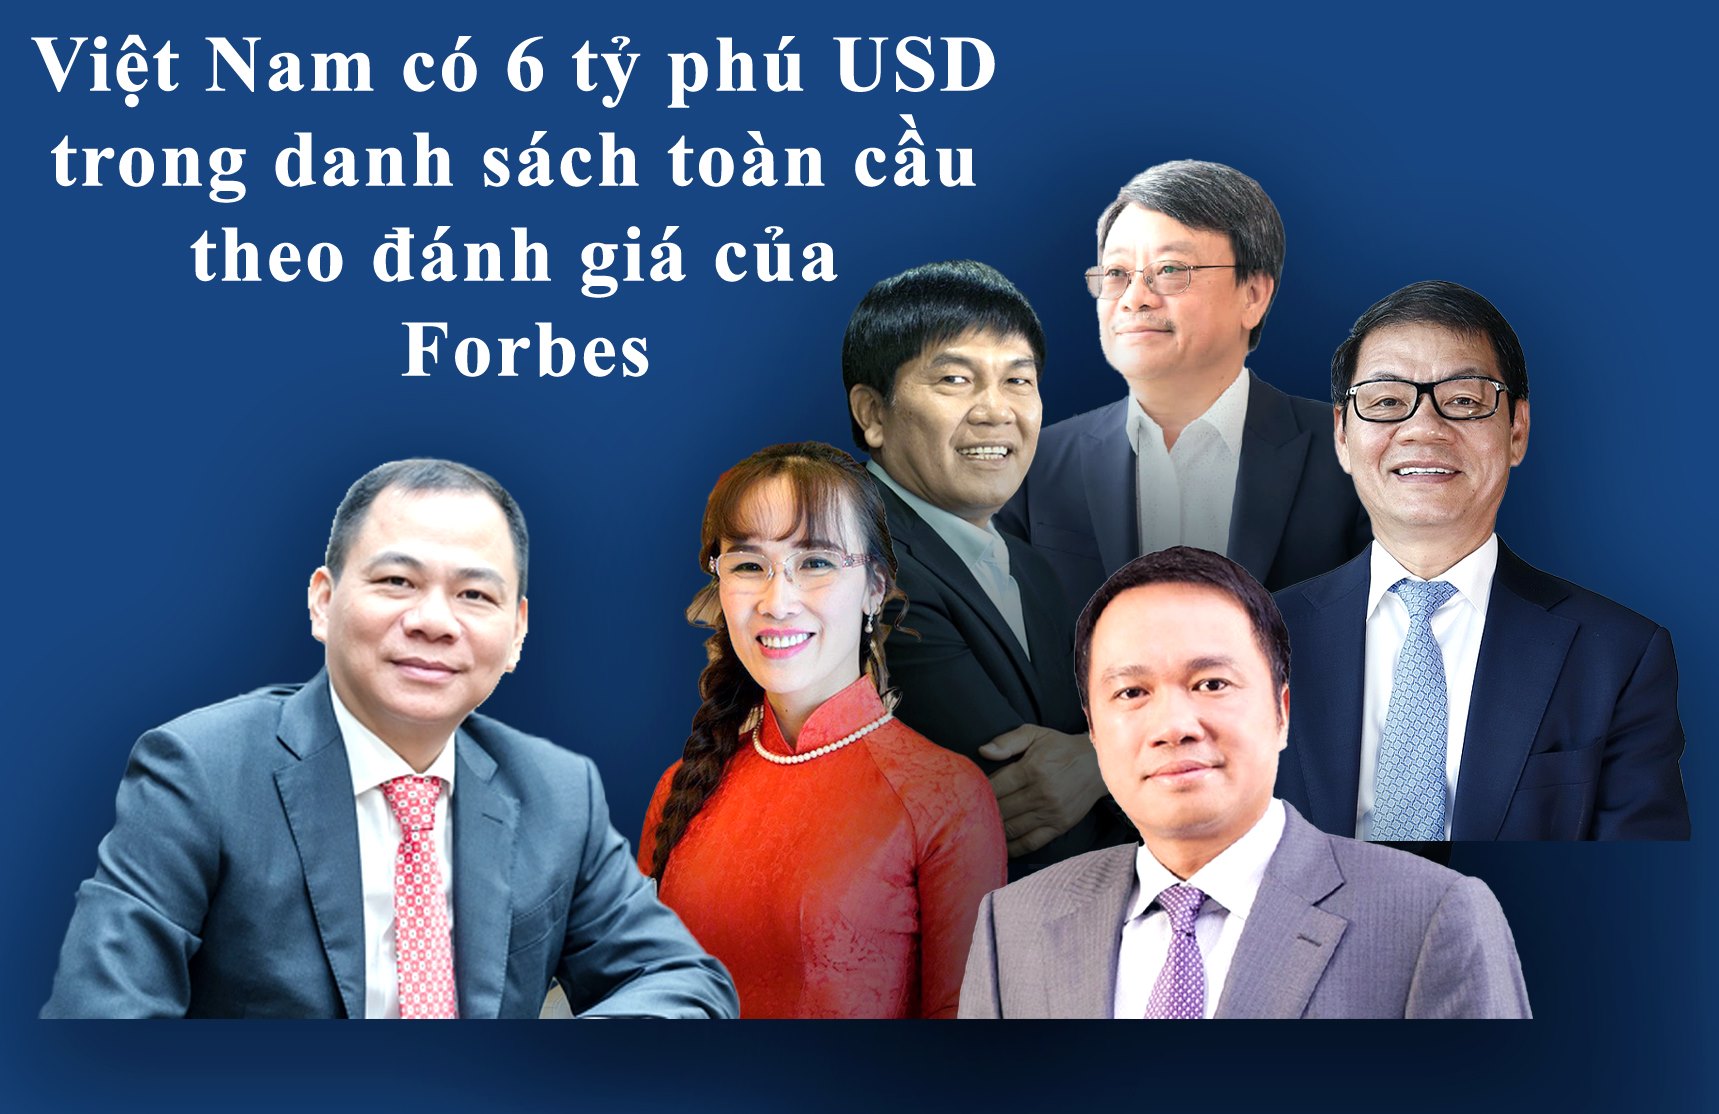 Việt Nam có 6 tỷ phú USD trên xếp hạng toàn cầu